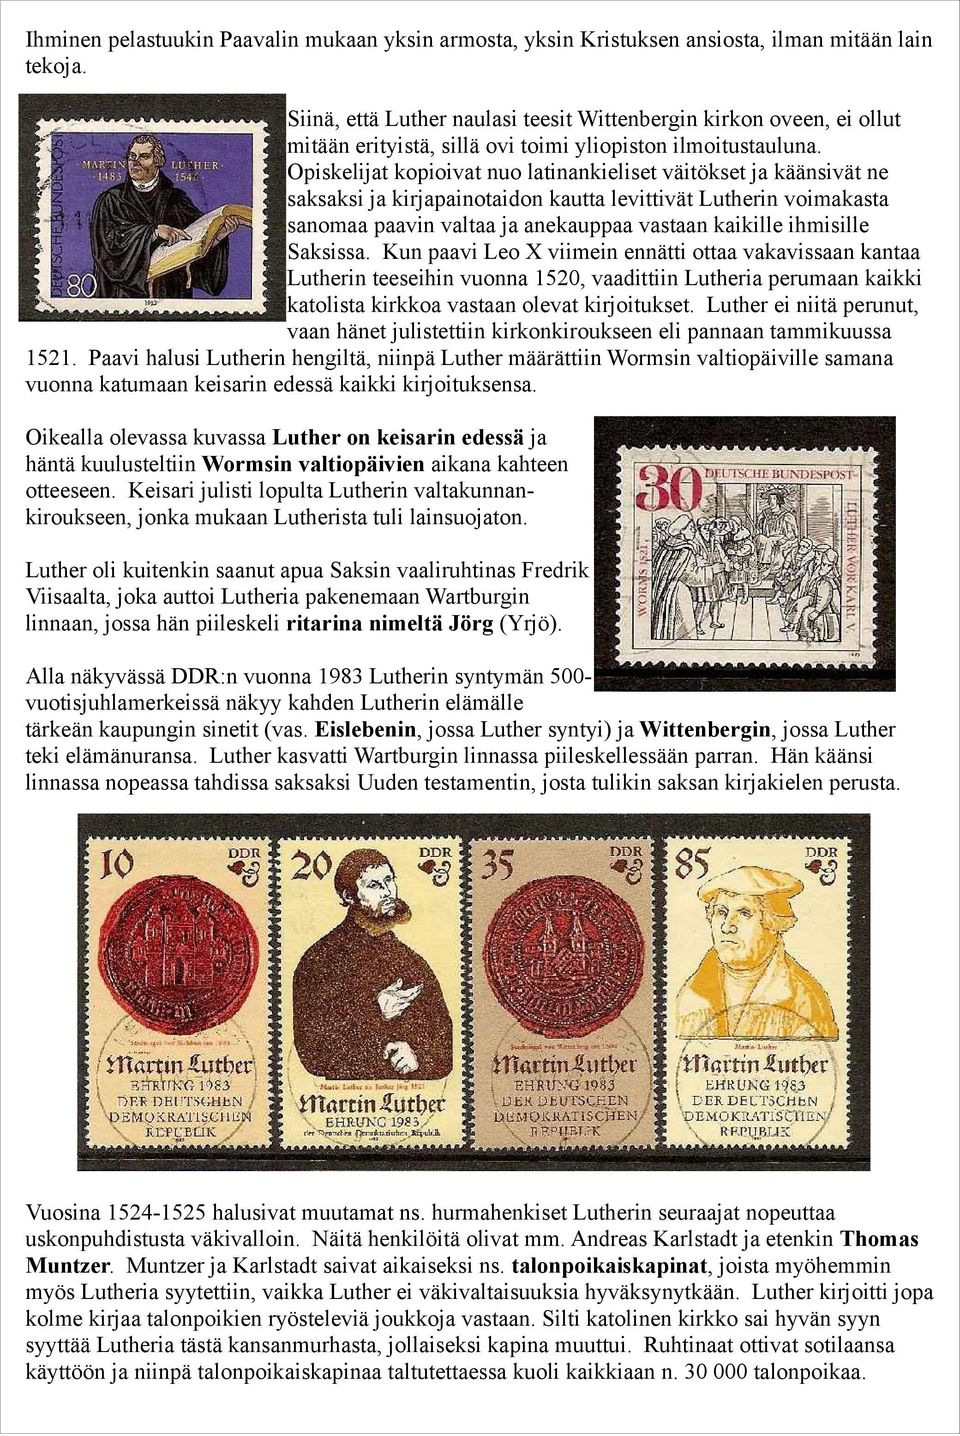 Opiskelijat kopioivat nuo latinankieliset väitökset ja käänsivät ne saksaksi ja kirjapainotaidon kautta levittivät Lutherin voimakasta sanomaa paavin valtaa ja anekauppaa vastaan kaikille ihmisille